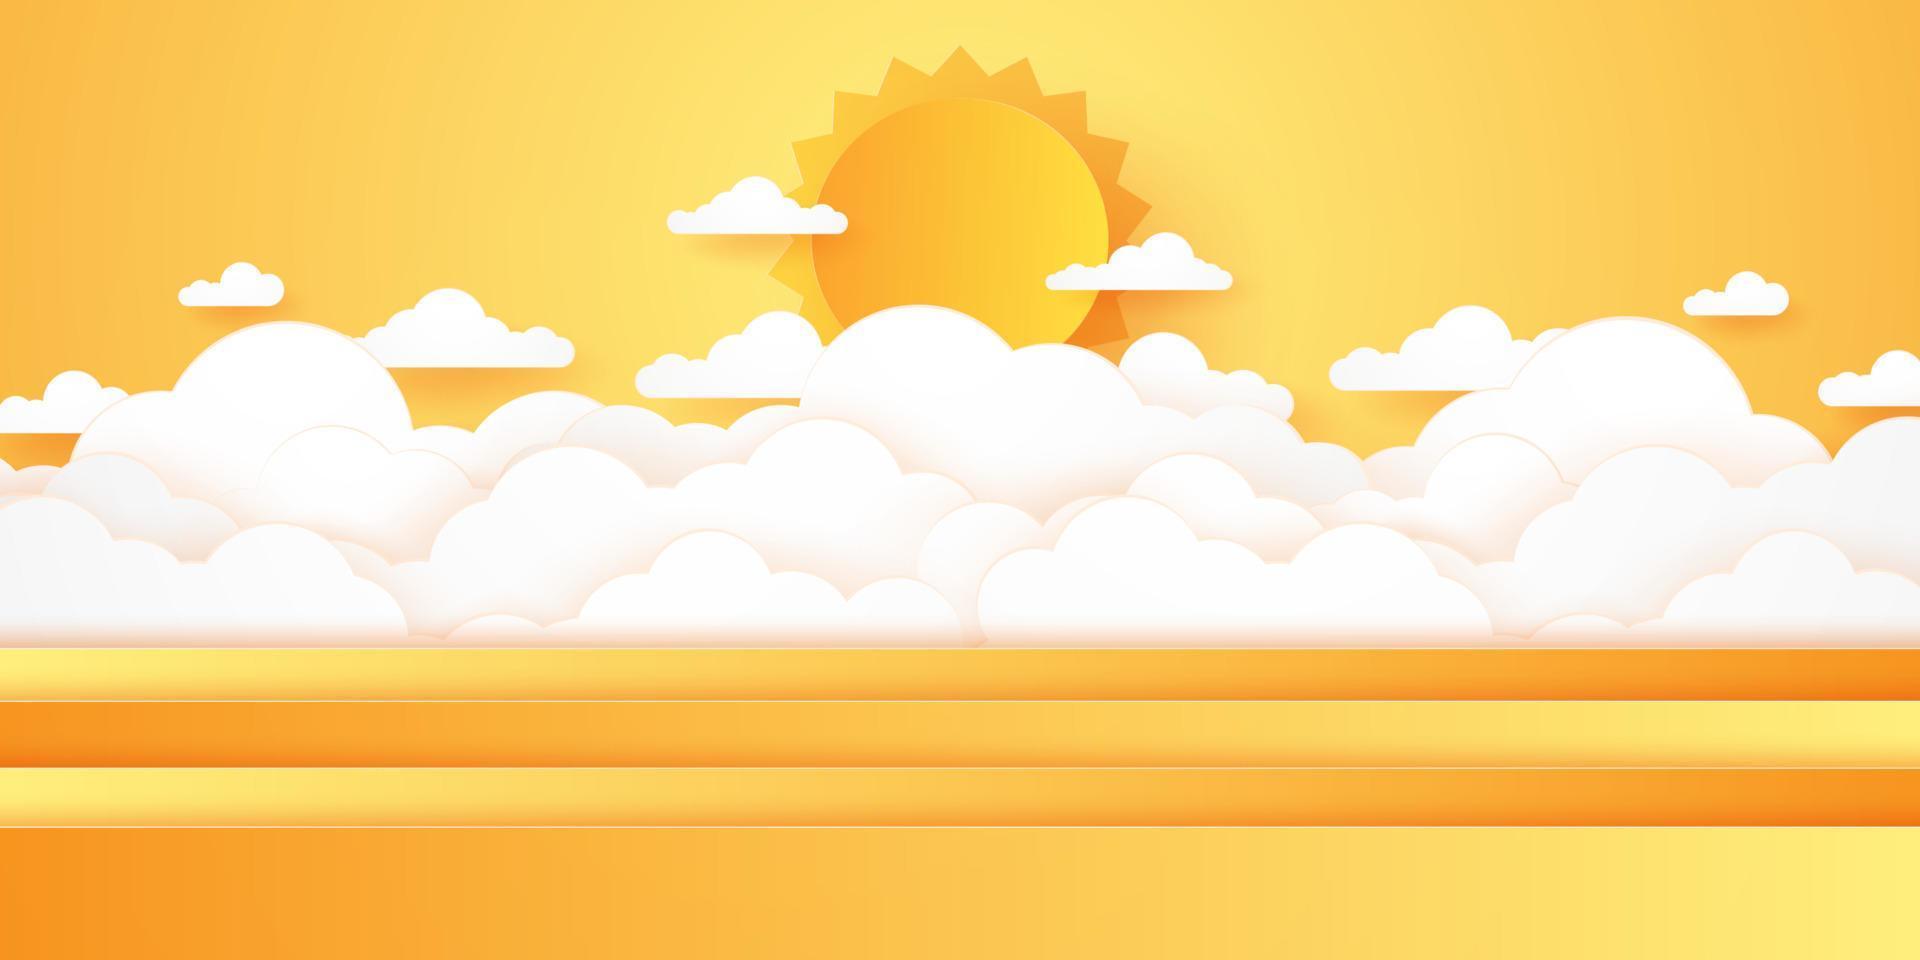 horario de verano, celaje, cielo nublado con sol brillante, estilo de arte en papel vector